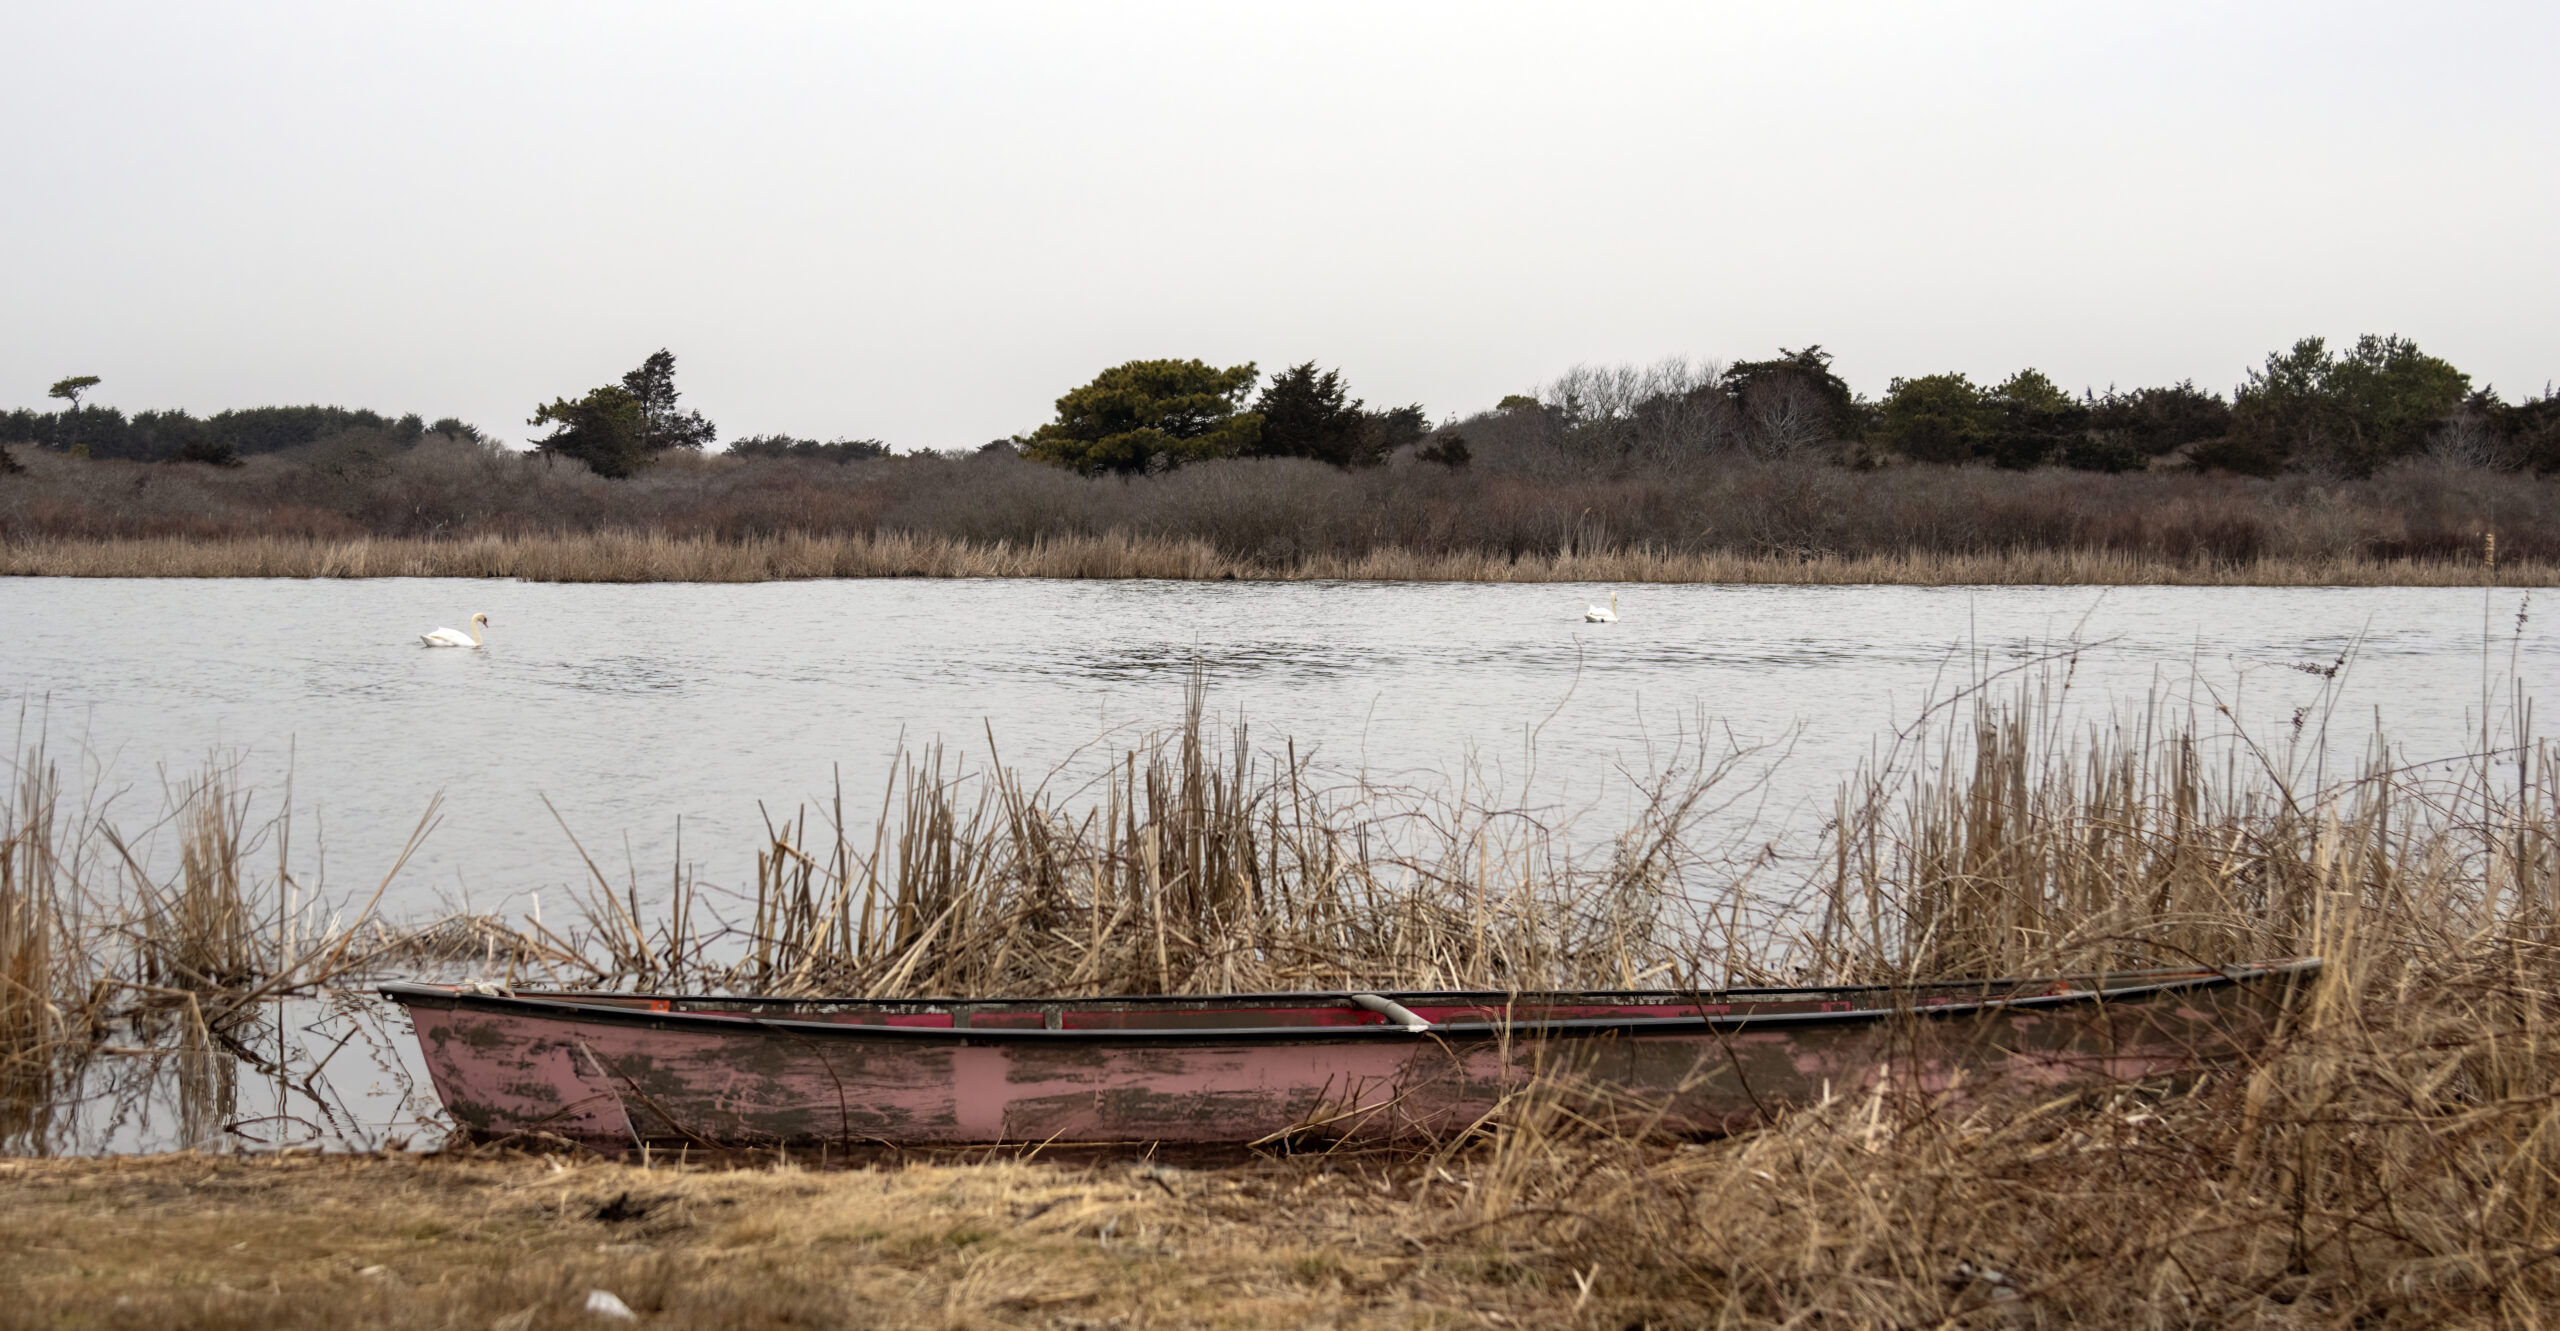 Bill Hoenk canoe and swans